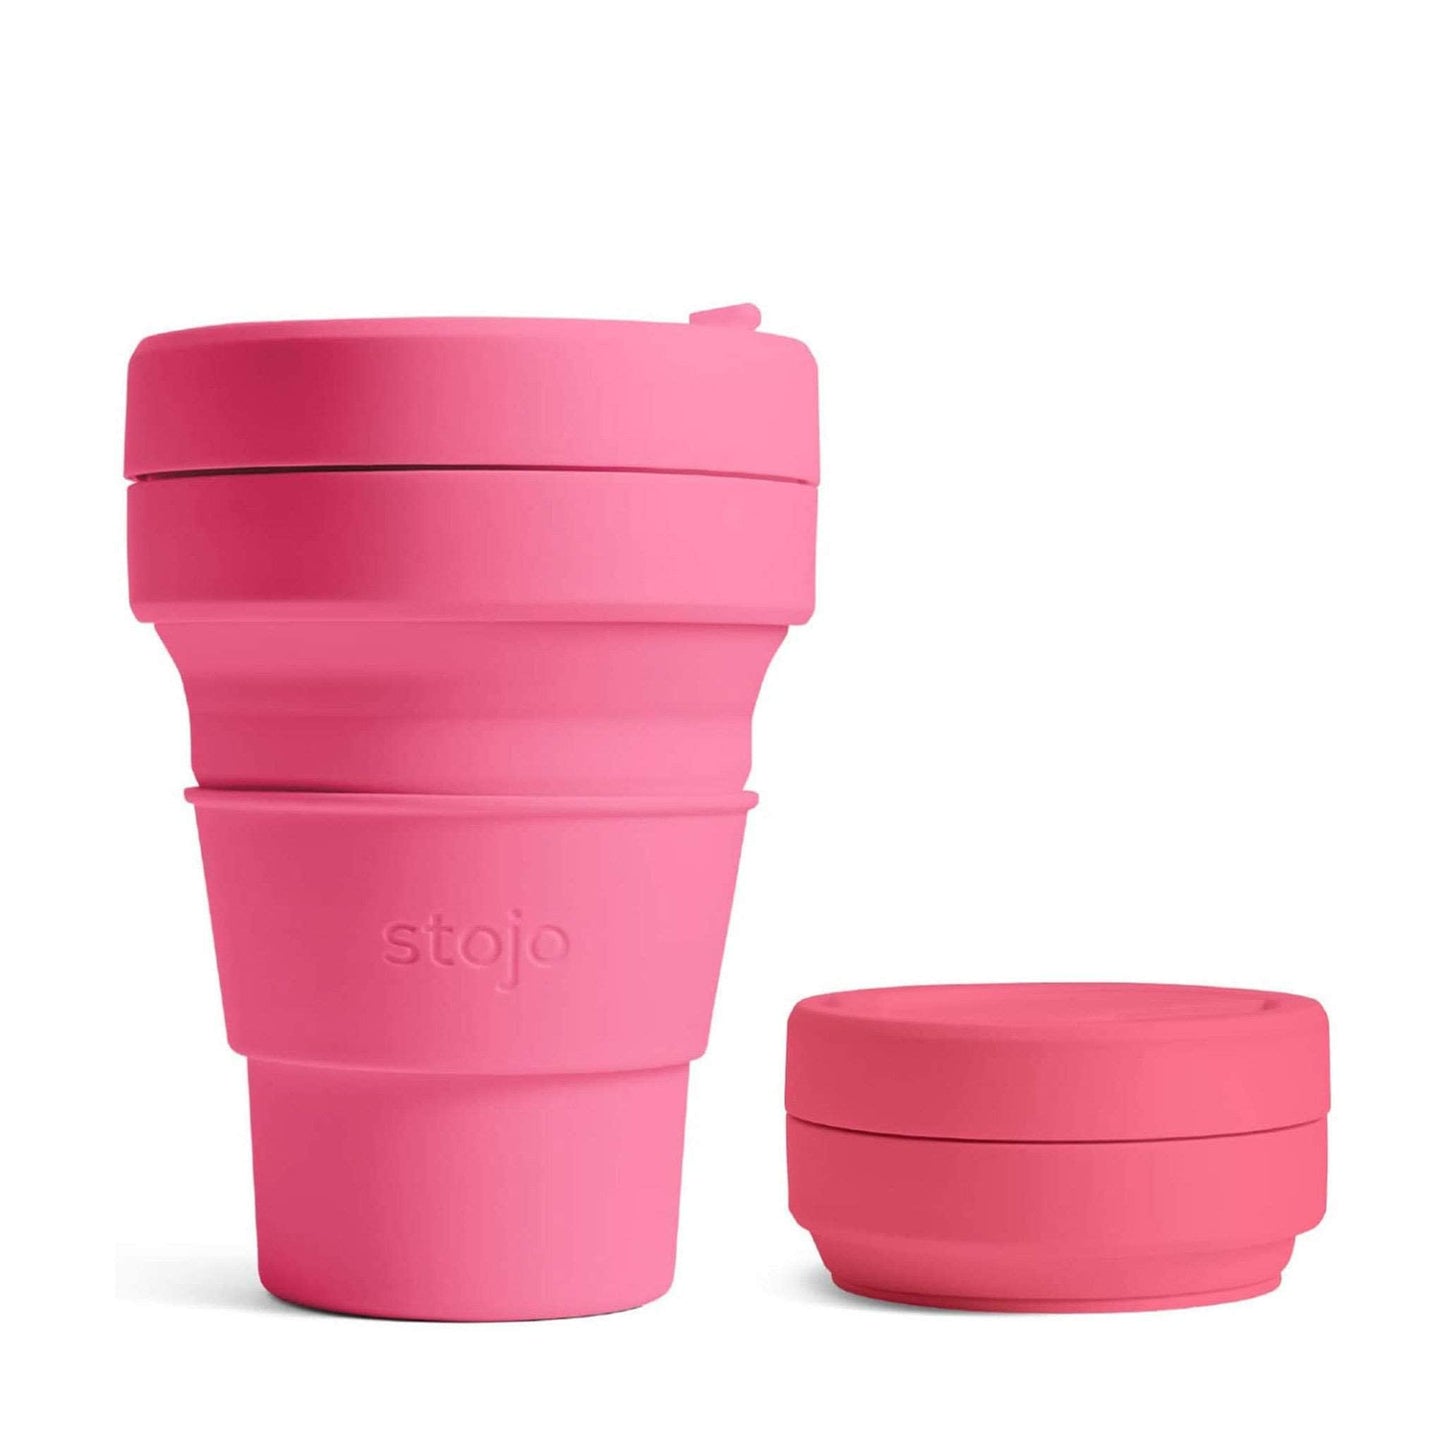 Stojo Coffee Cups Stojo Collapsible & Reusable Travel Mug 12oz/355ml - Peony